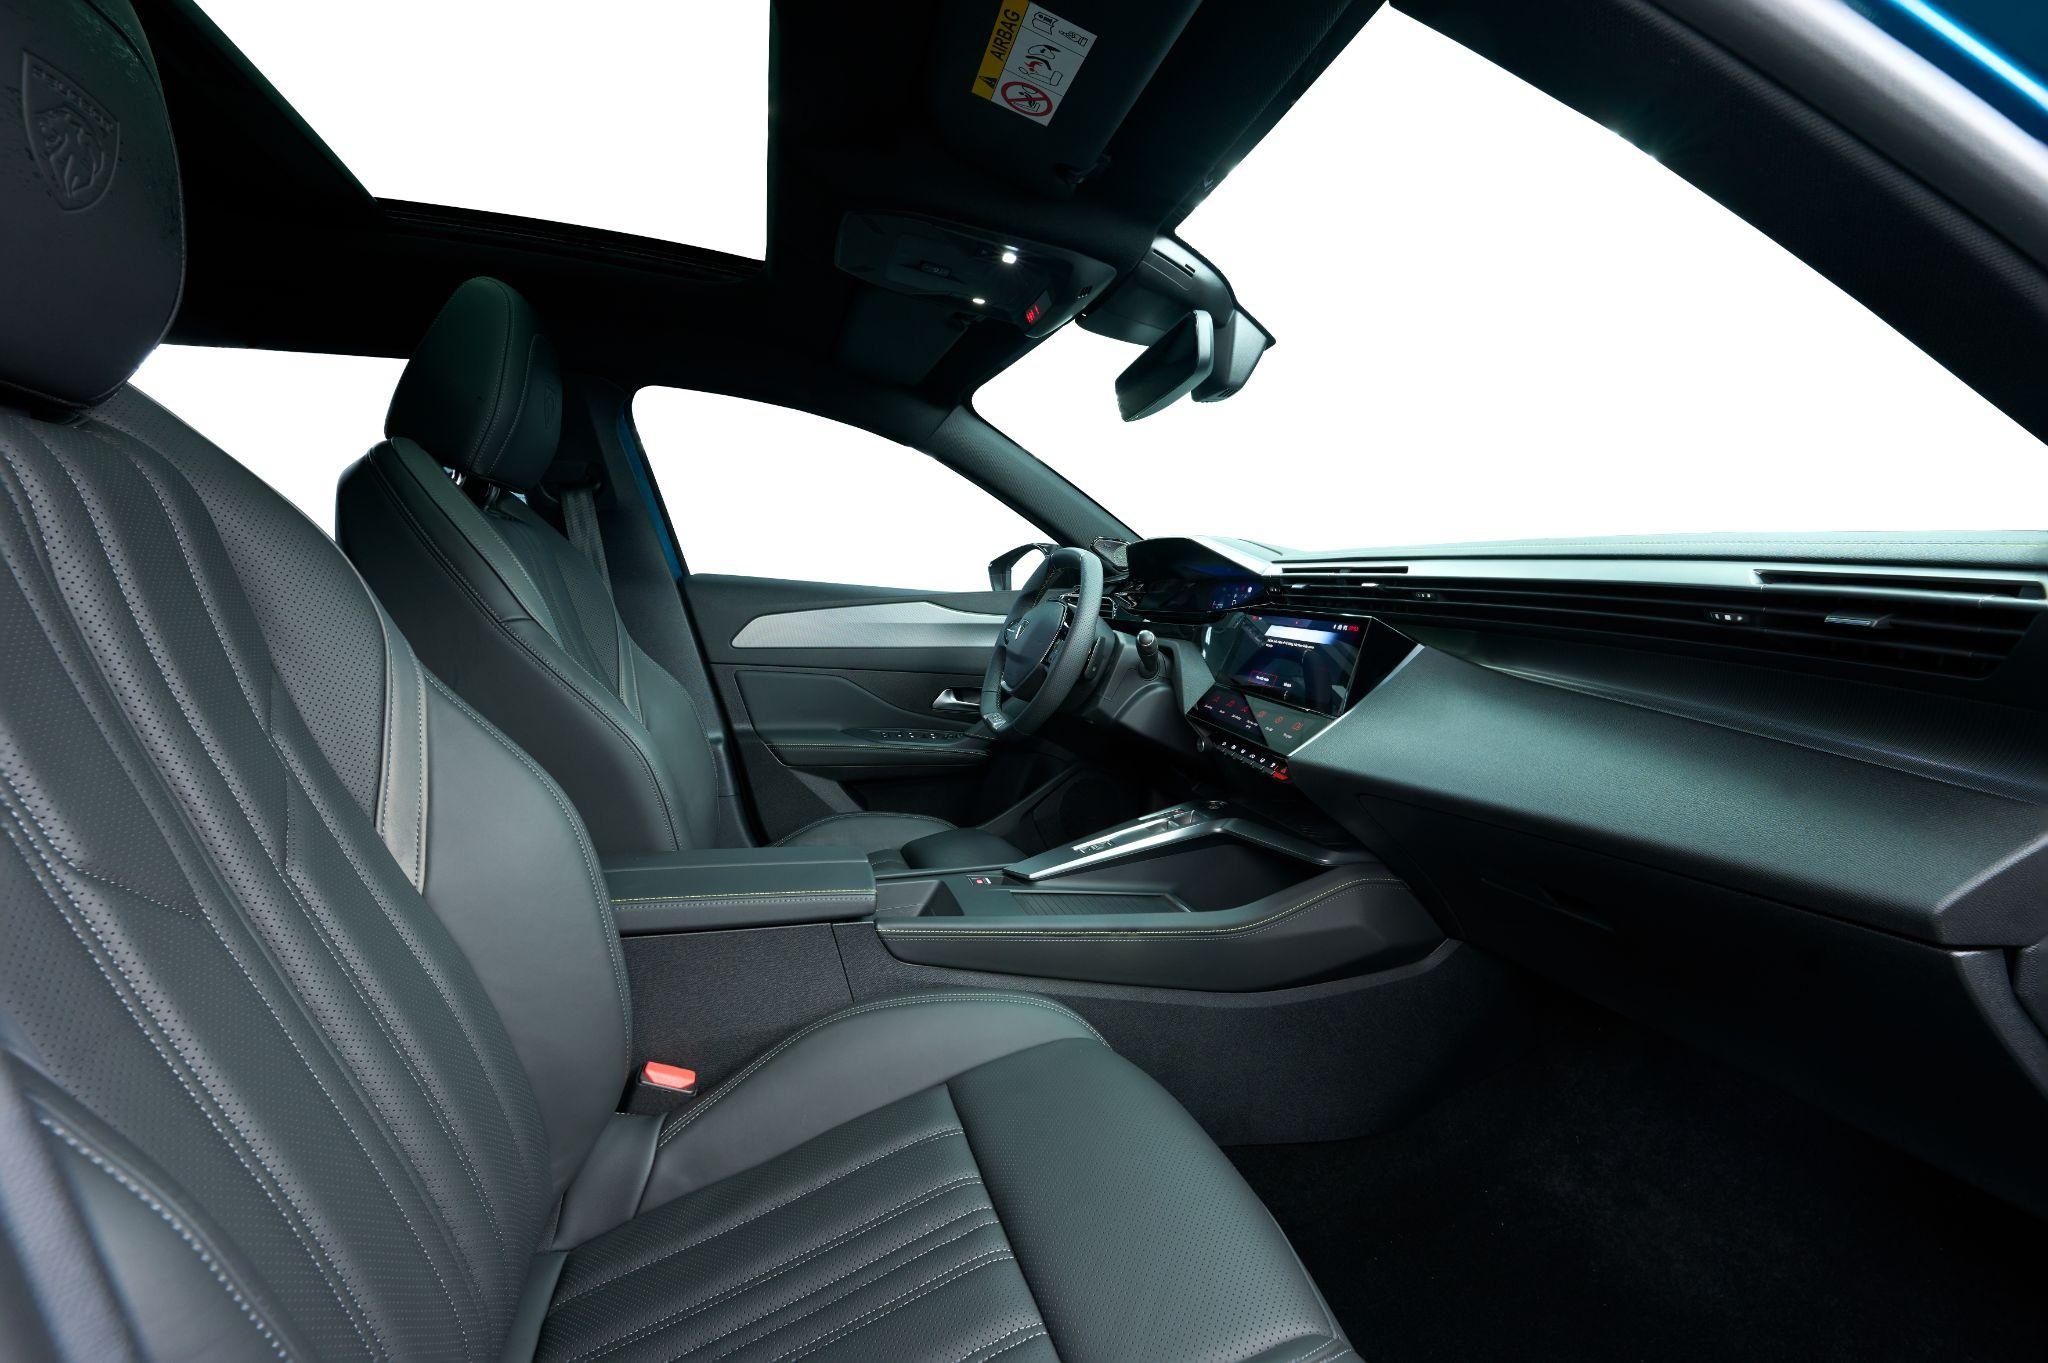 Toàn bộ ghế ngồi bọc da được điểm xuyết bằng những đường chỉ khâu cùng họa tiết màu tương phản. Trong đó bản GT sử dụng da Nappa cao cấp, Premium dùng da Claudia và Allure là da thường. Cả 3 phiên bản được trang bị ghế lái chỉnh điện 10 hướng, còn ghế hành khách chỉnh điện 6 hướng chỉ xuất hiện từ bản Premium trở lên. Riêng 408 GT thêm tính năng nhớ vị trí ghế lái và massage, sưởi ấm hàng ghế trước.